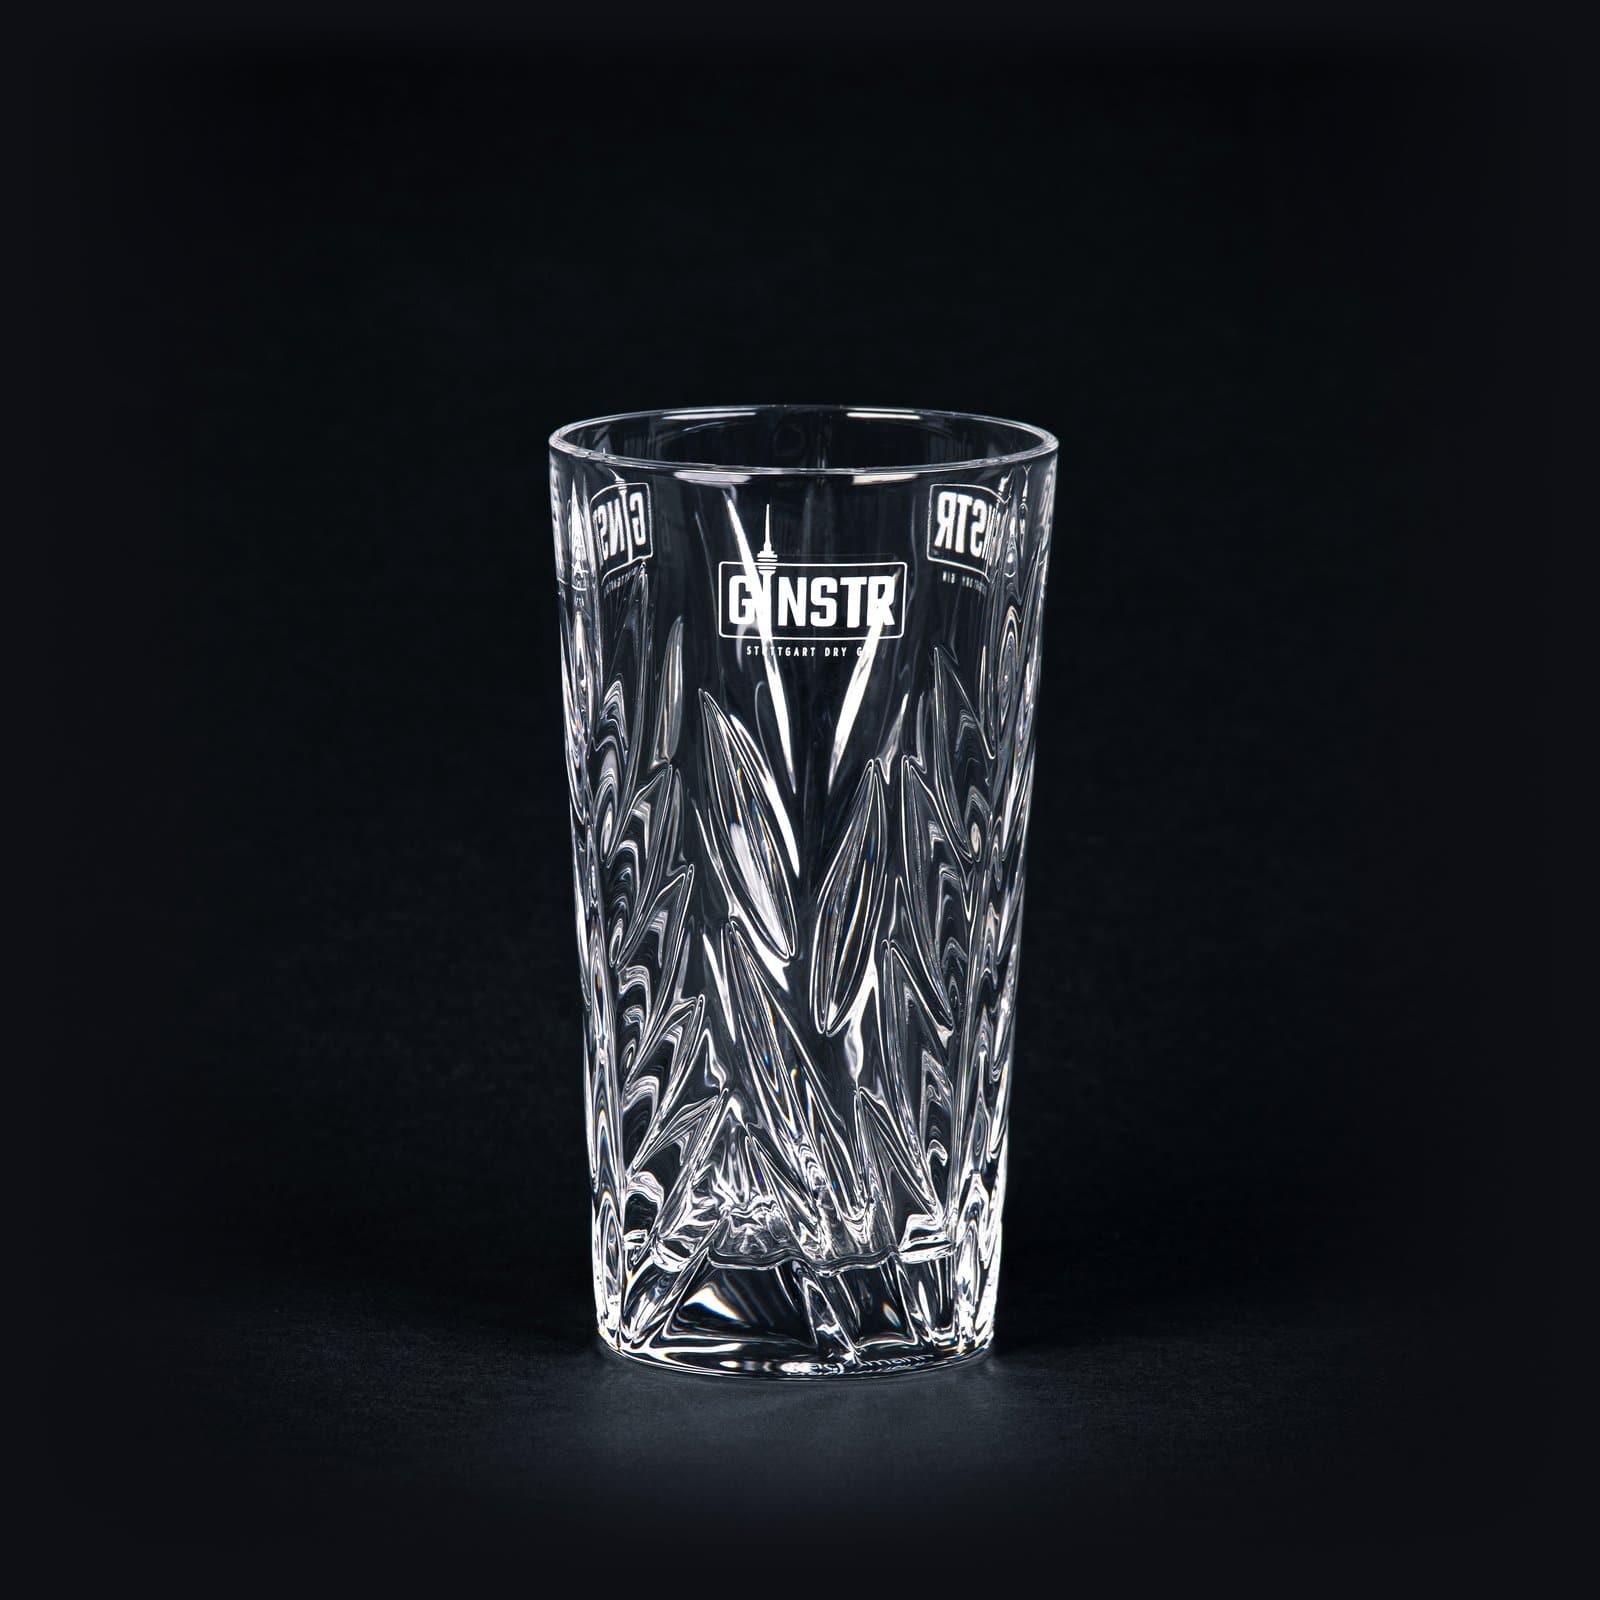 Billede af GINSTR Originalt krystalglas